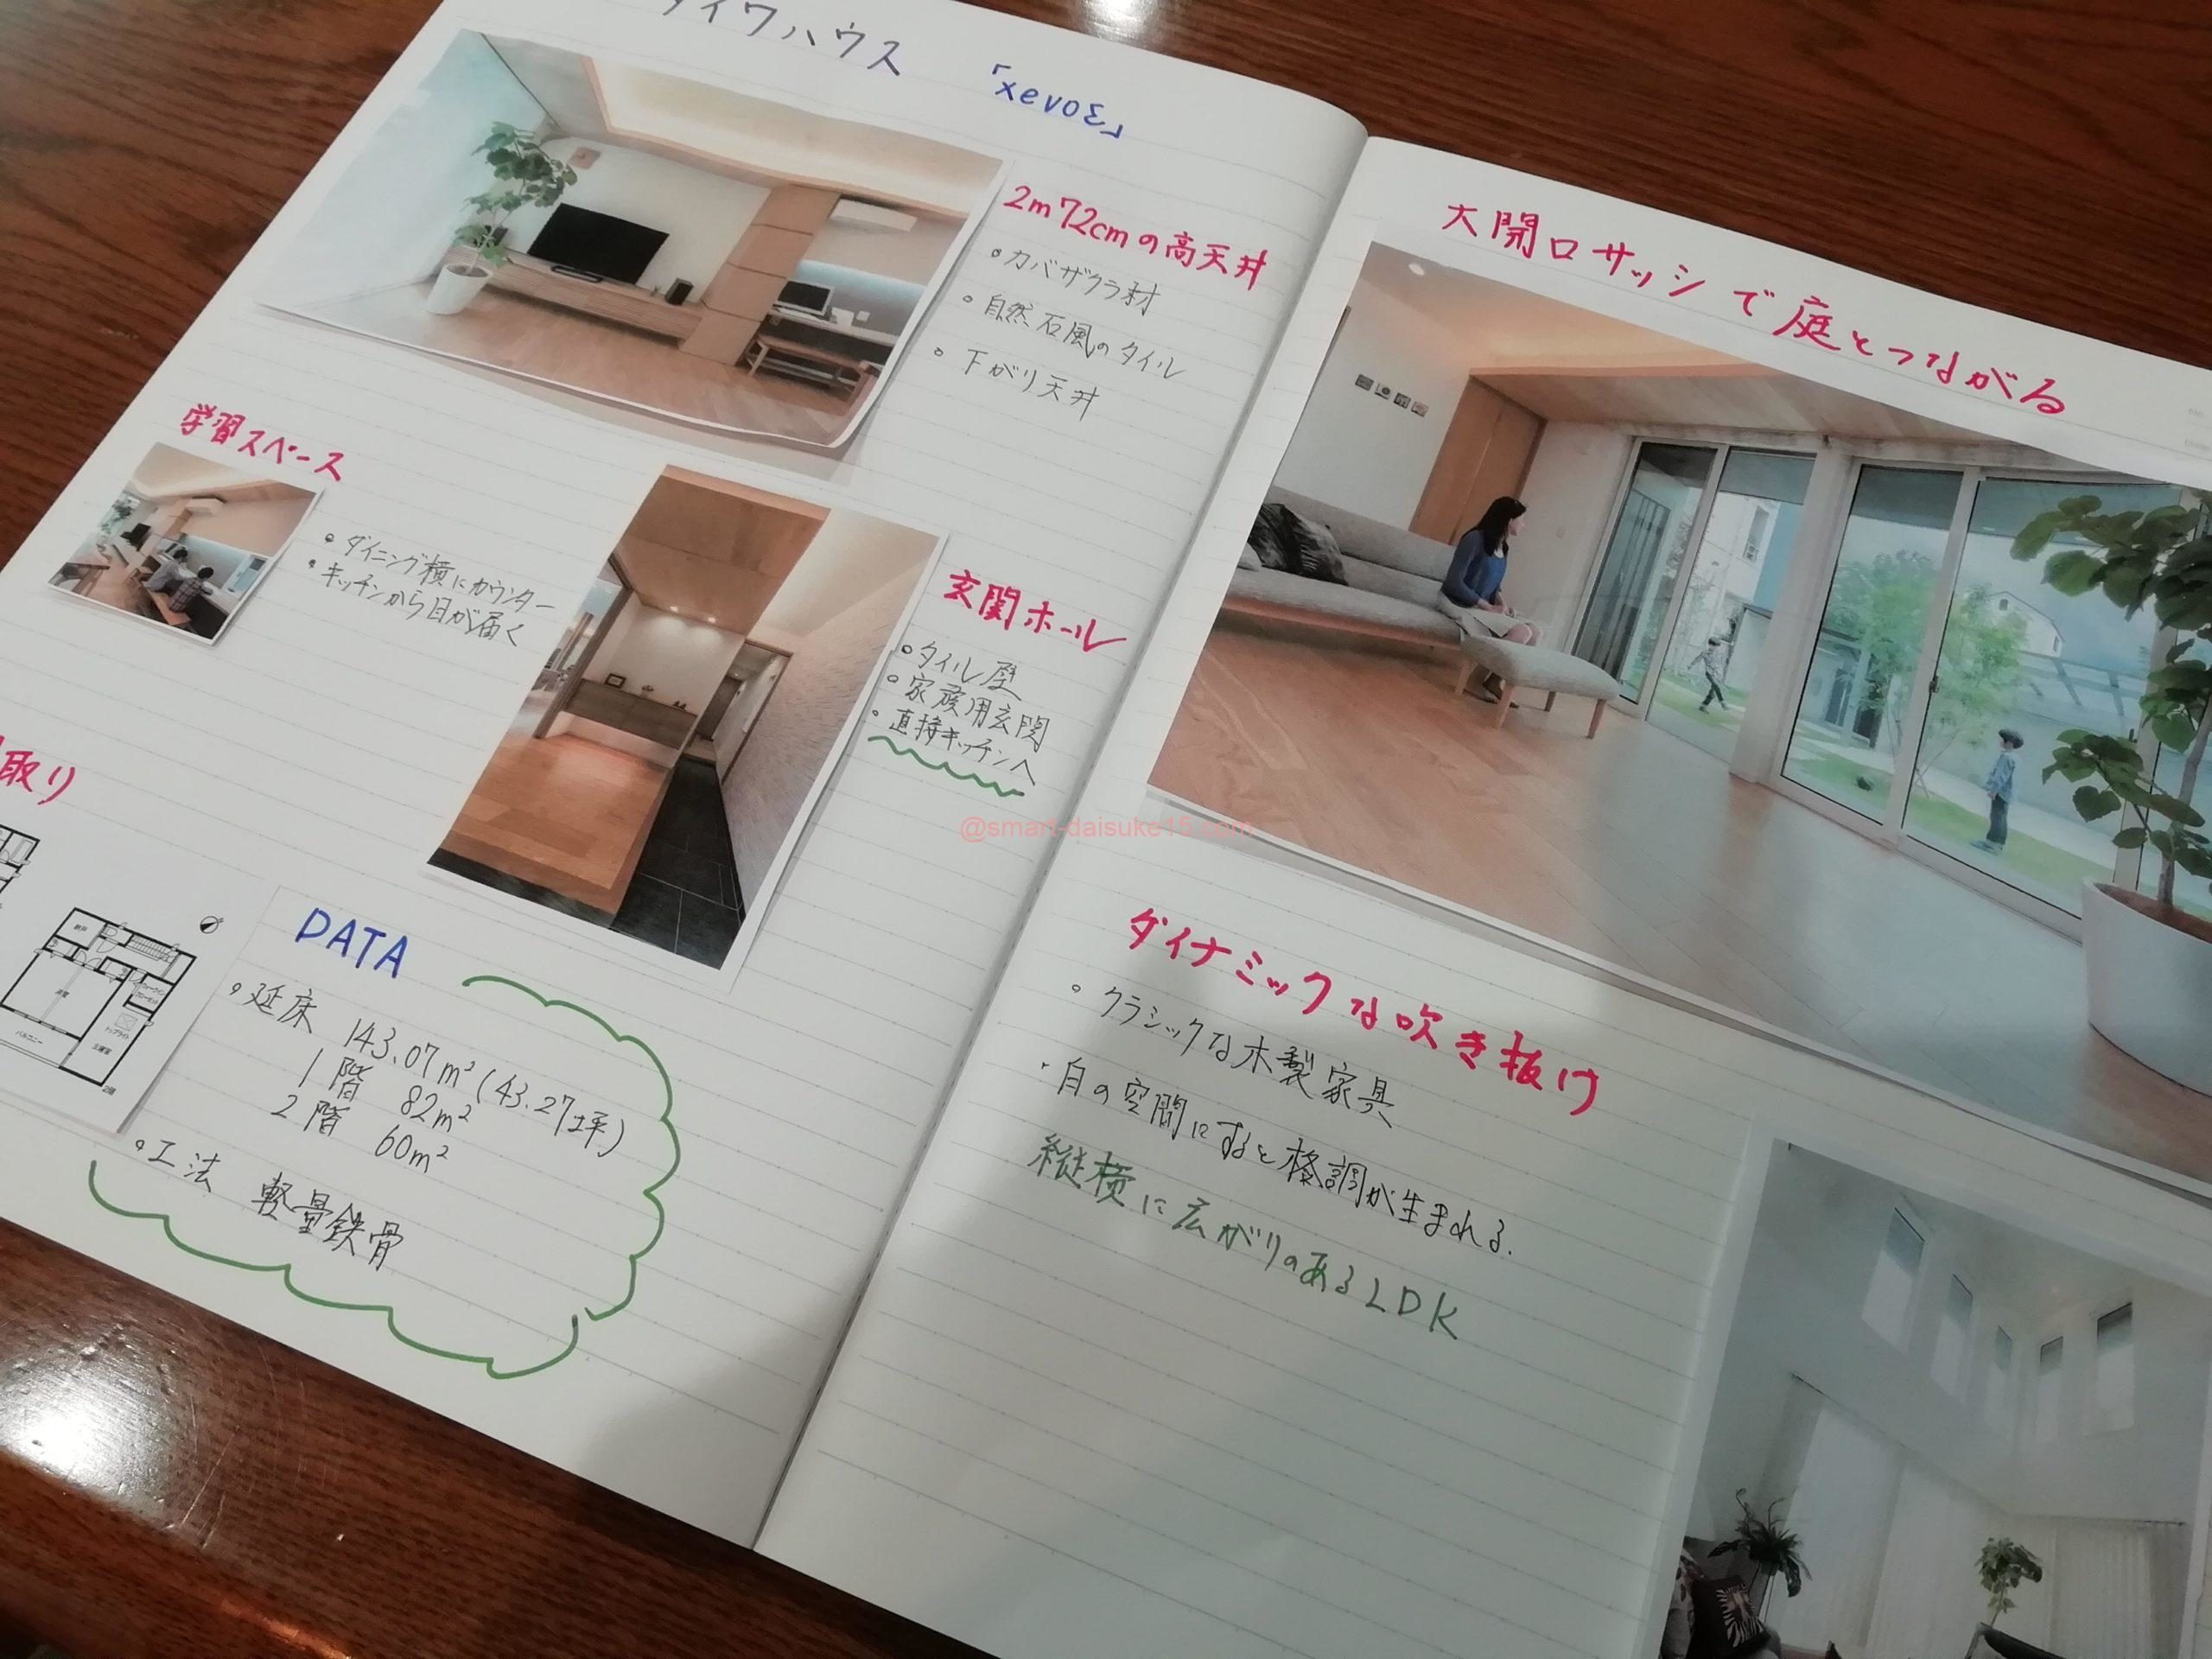 家づくりノート作り方の秘訣 見本から分かる書き方とは 一条工務店とイツキのブログ